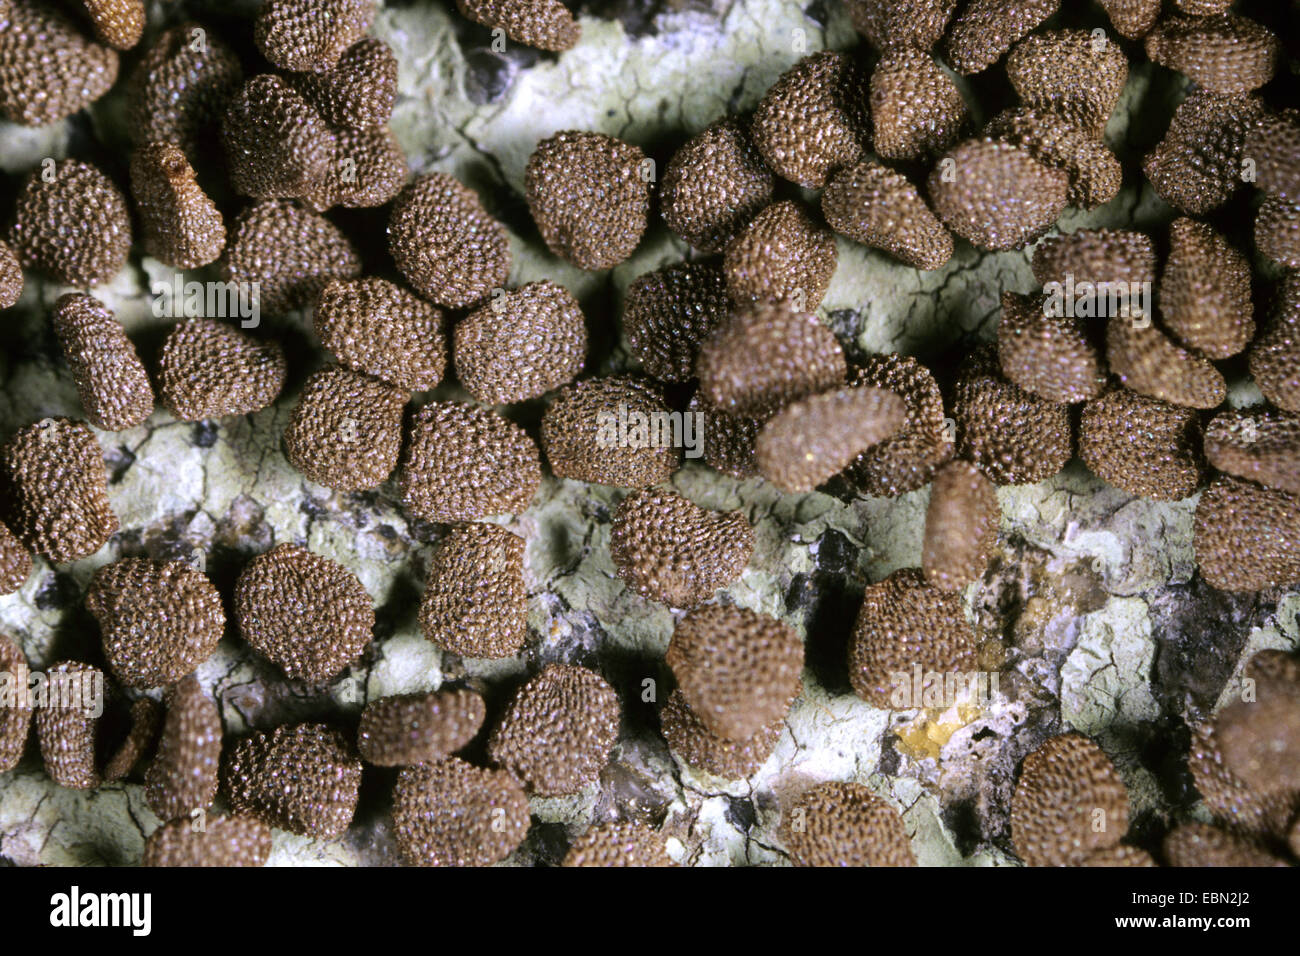 Black henbane (Hyoscyamus niger), seeds Stock Photo